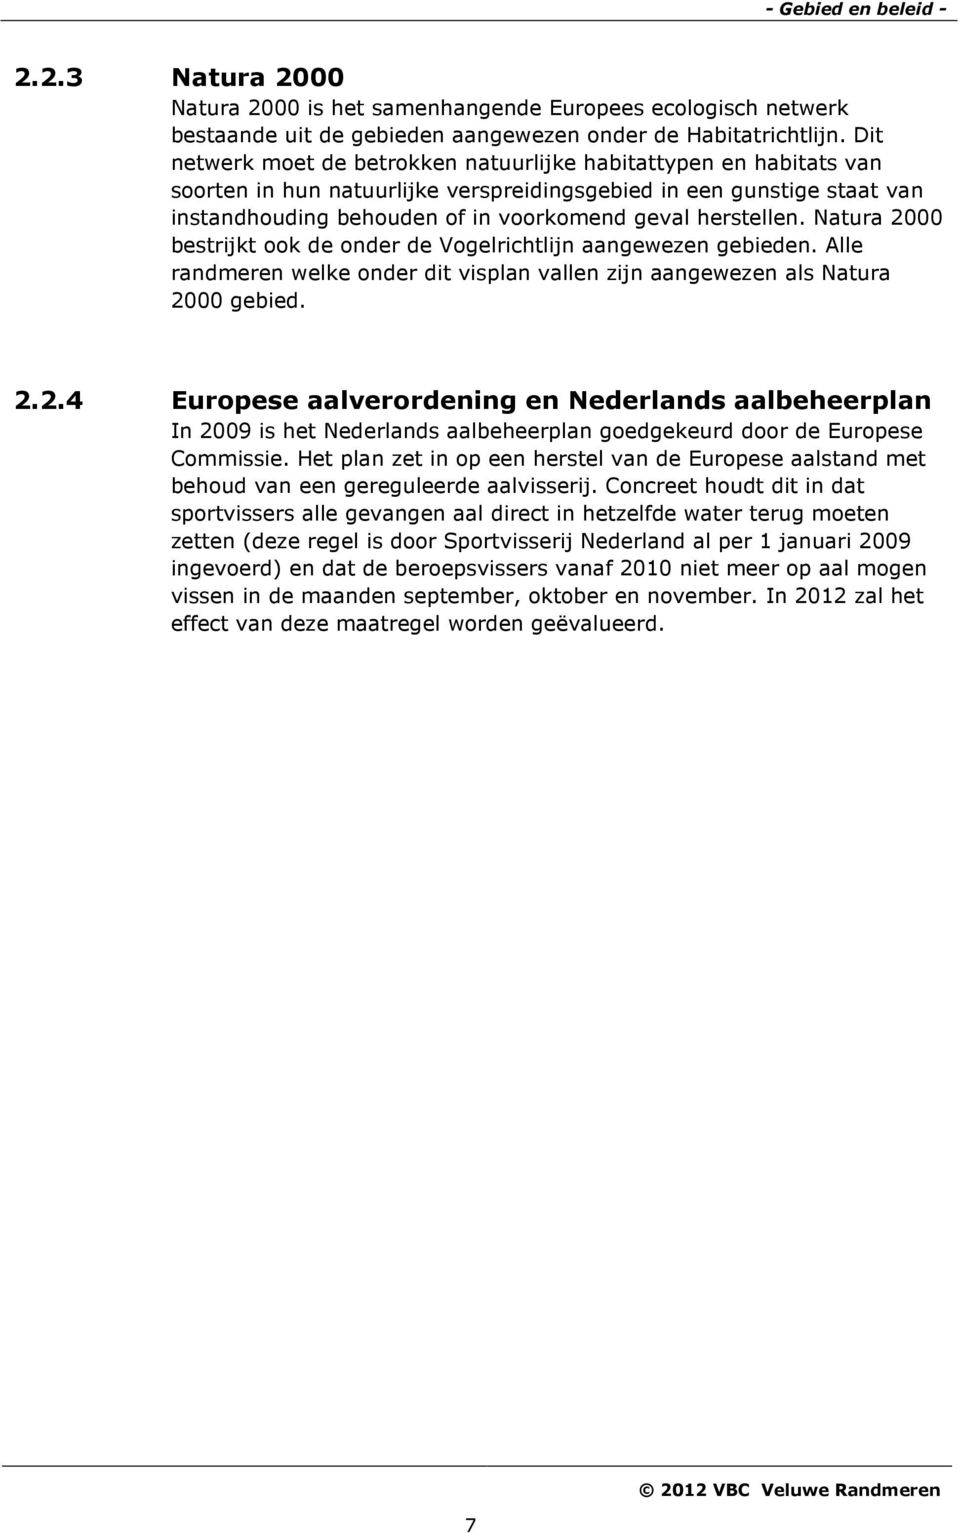 herstellen. Natura 2000 bestrijkt ook de onder de Vogelrichtlijn aangewezen gebieden. Alle randmeren welke onder dit visplan vallen zijn aangewezen als Natura 2000 gebied. 2.2.4 Europese aalverordening en Nederlands aalbeheerplan In 2009 is het Nederlands aalbeheerplan goedgekeurd door de Europese Commissie.